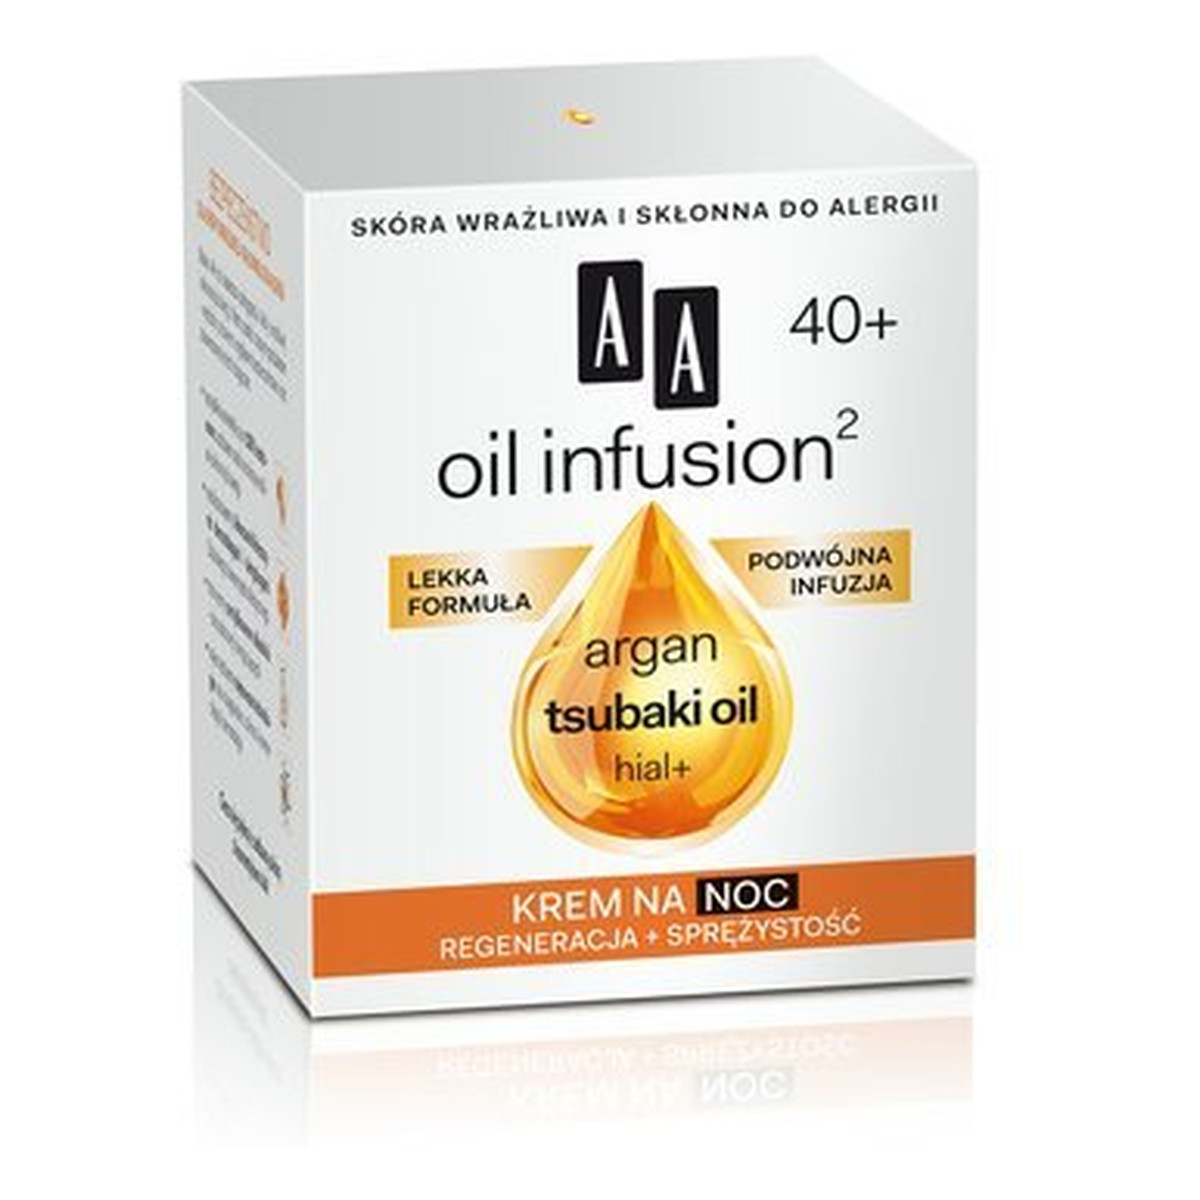 AA Oil Infusion2 40+ Krem Regeneracja + Sprężystość Na Noc 50ml